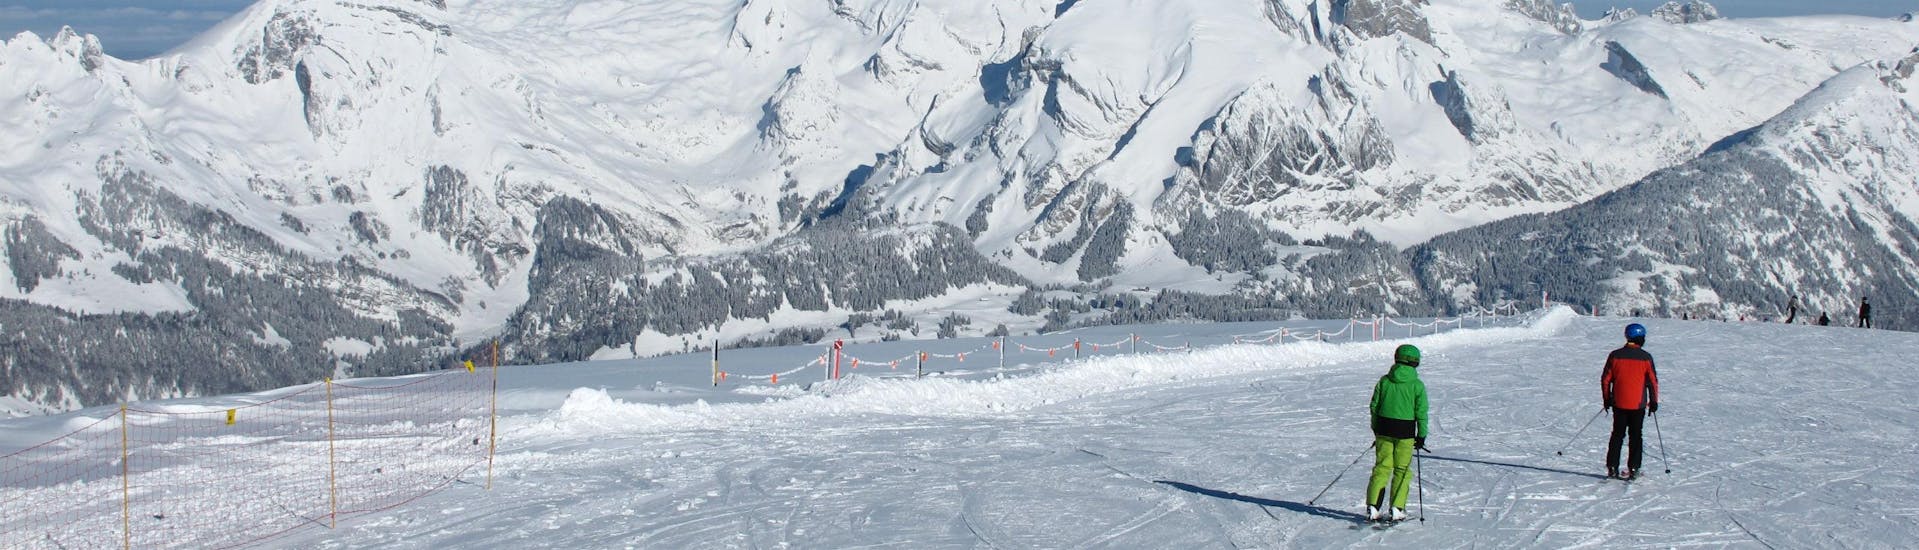 Deux skieurs descendent sous le soleil une des pistes de la station de ski de Chaeserrugg, où les visiteurs peuvent réserver des cours de ski avec les écoles de ski locales.